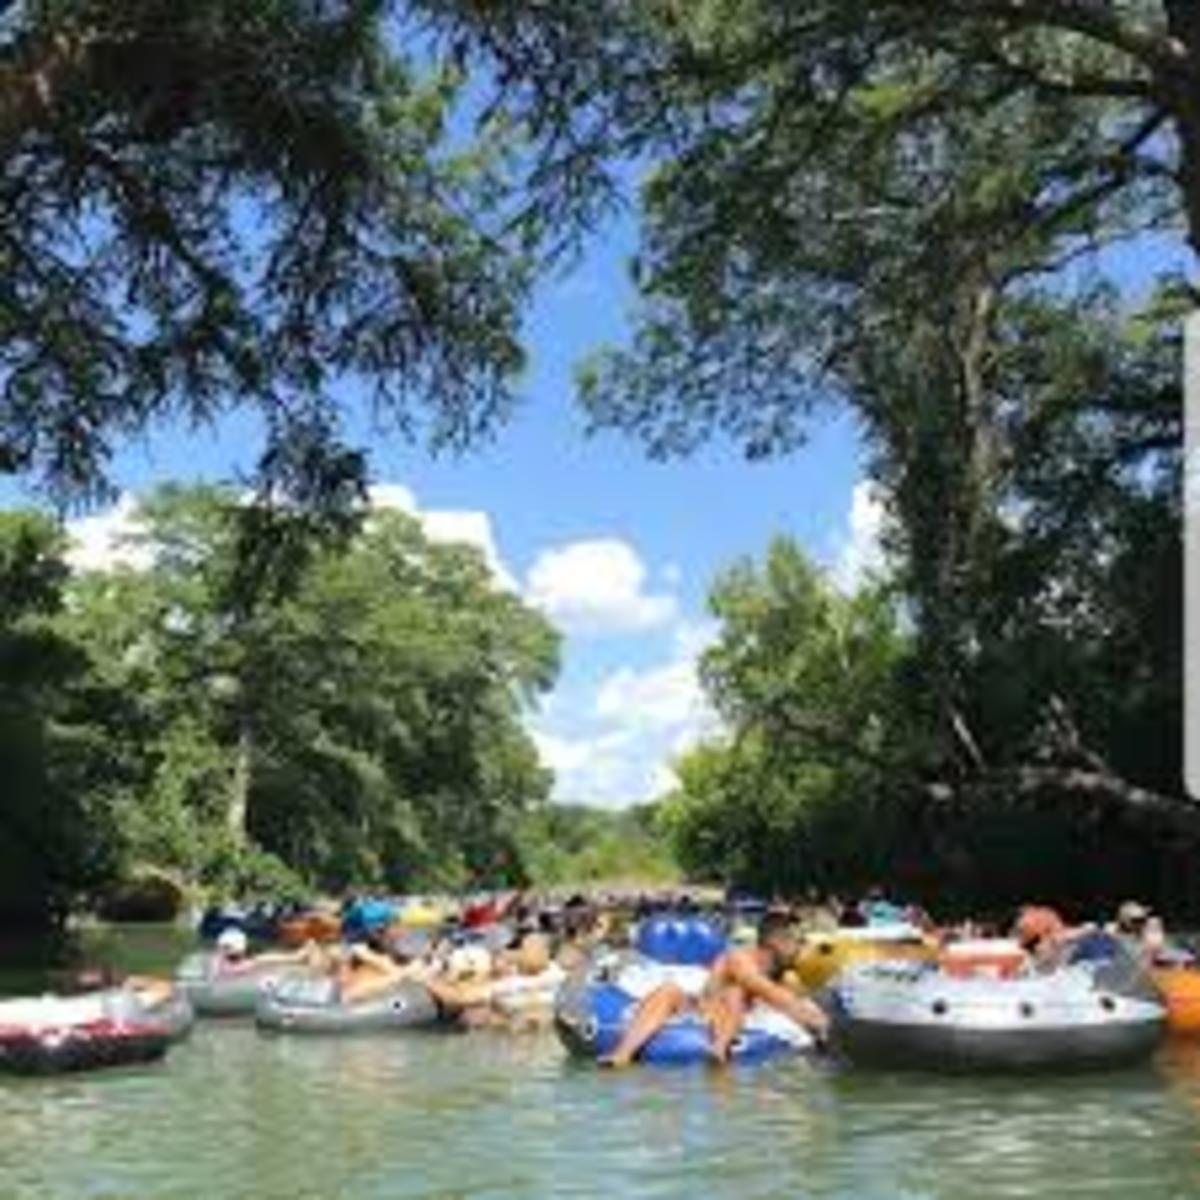 10-fun-outdoor-activities-in-austin-texas